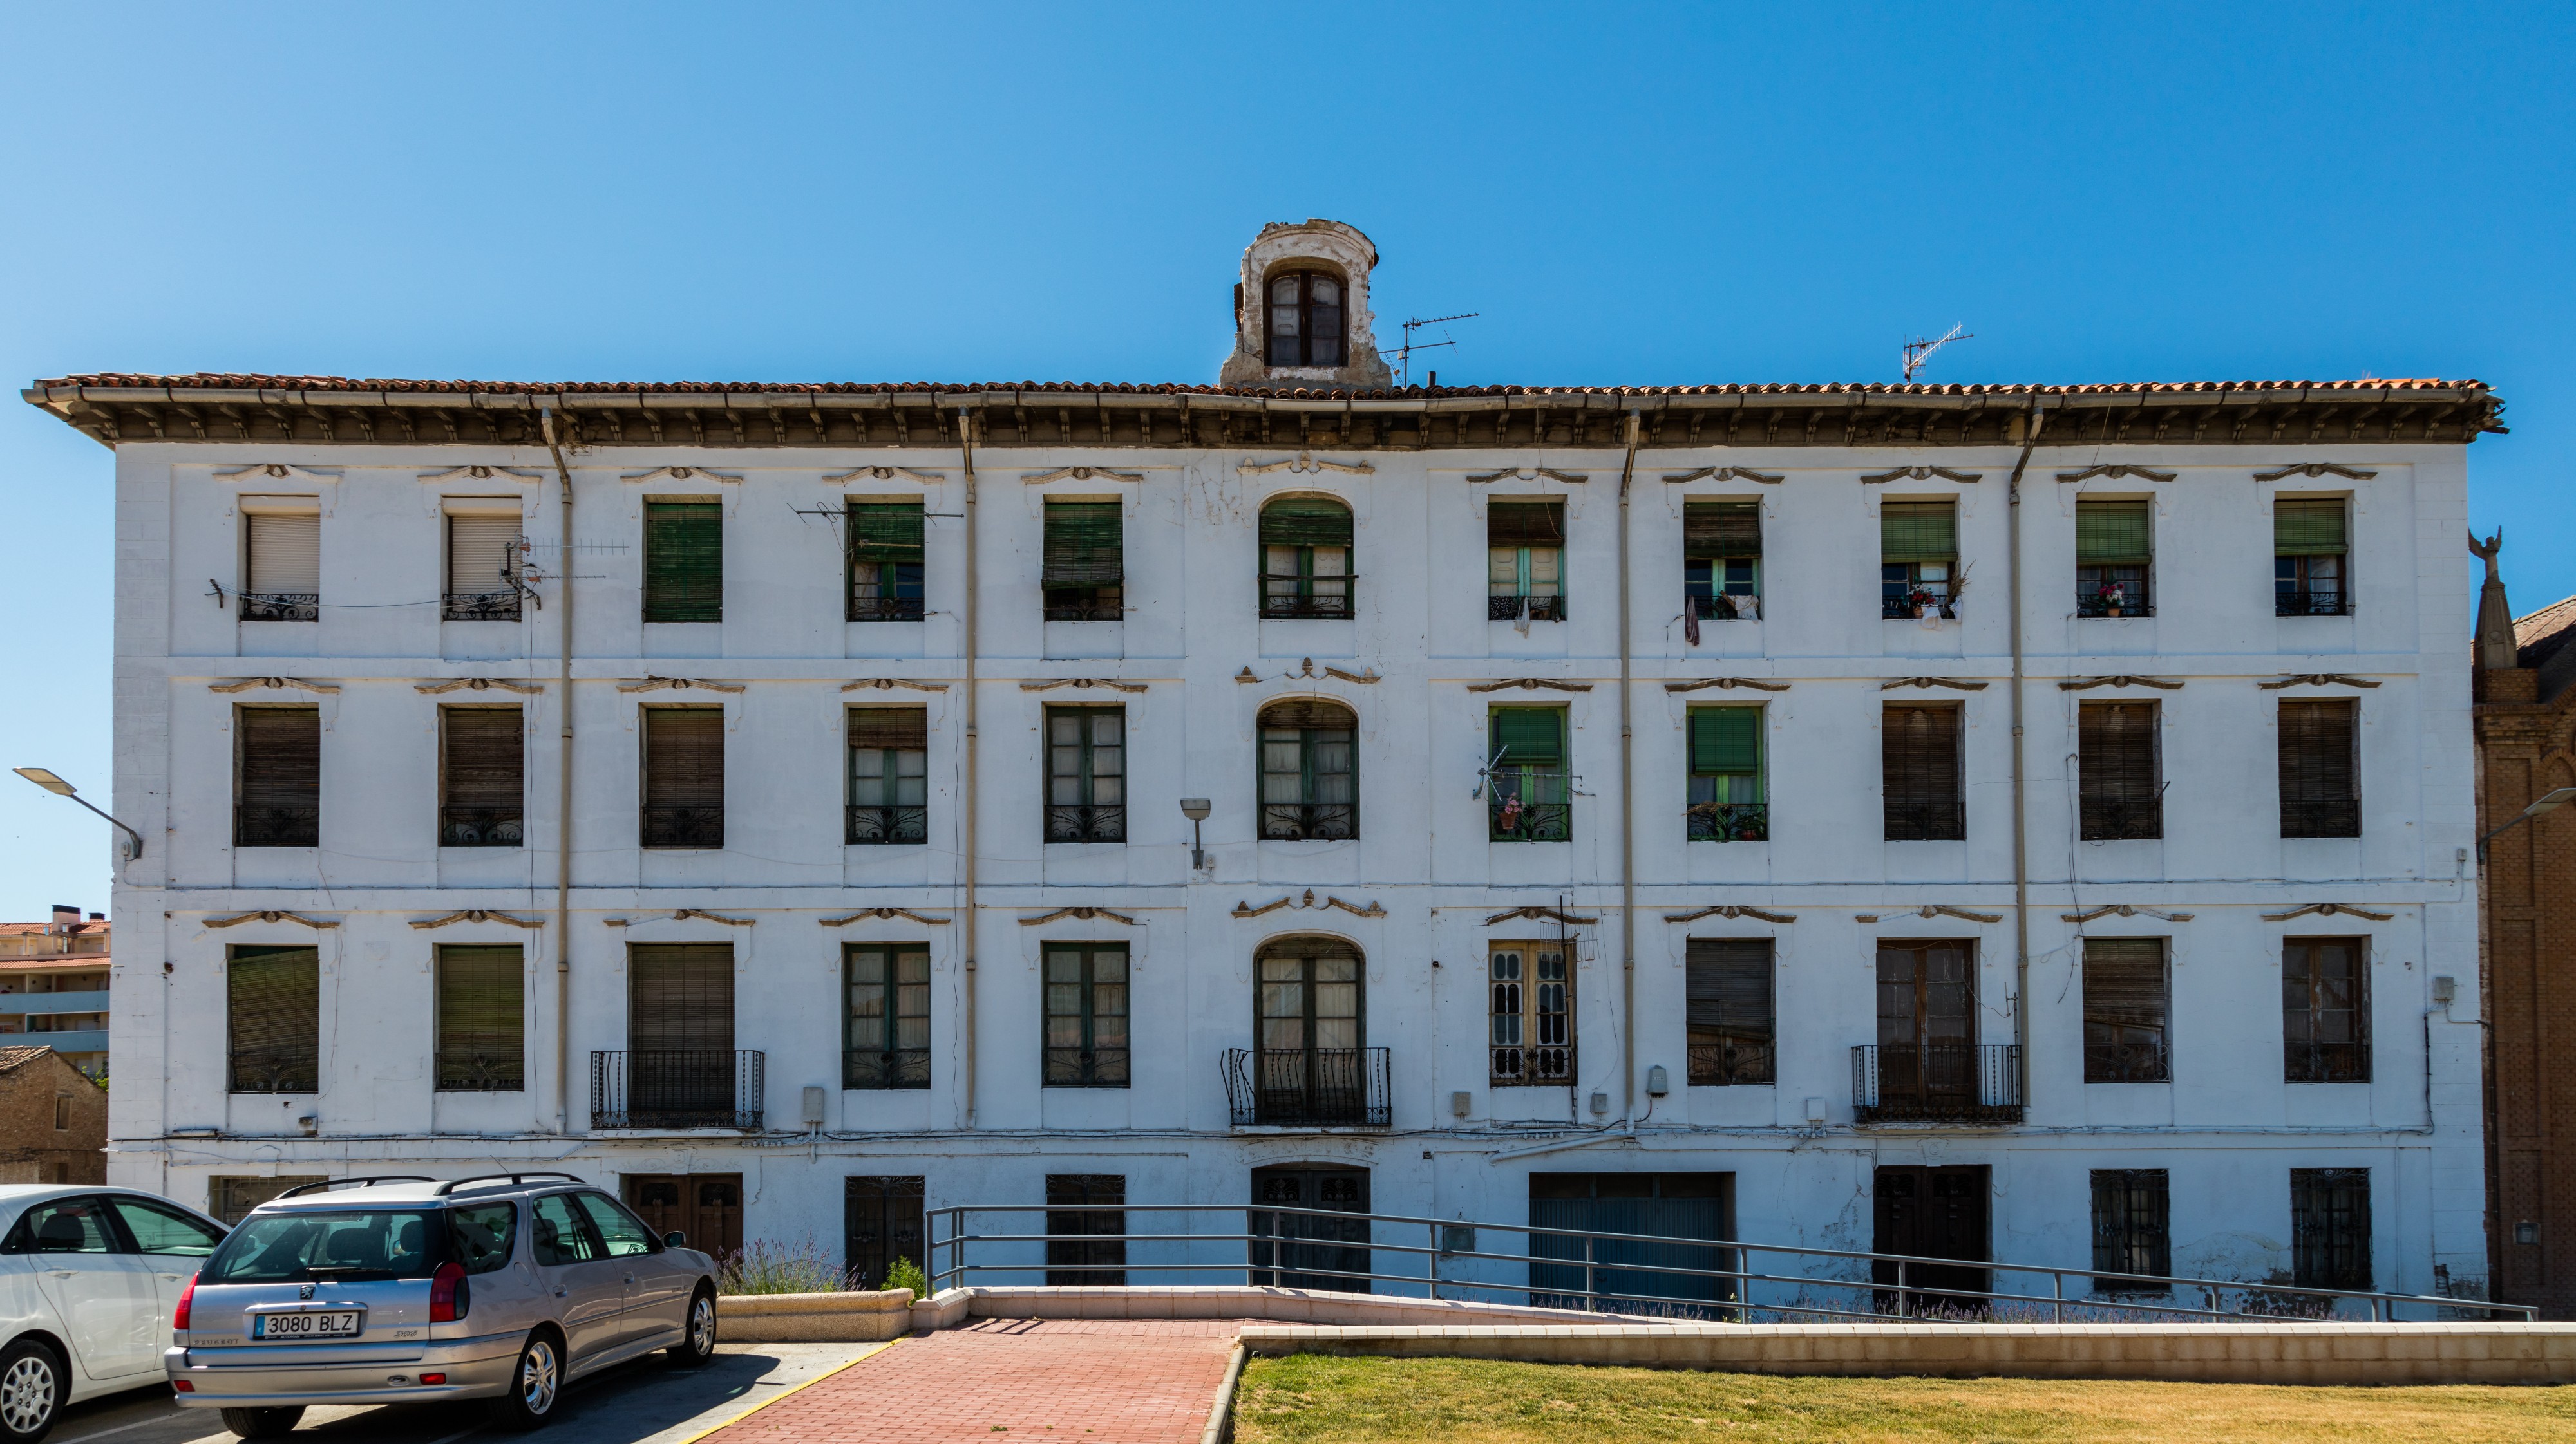 Antigua casa residencial, calle Explanada Estación, Calatayud, España, 2016-06-21, DD 06